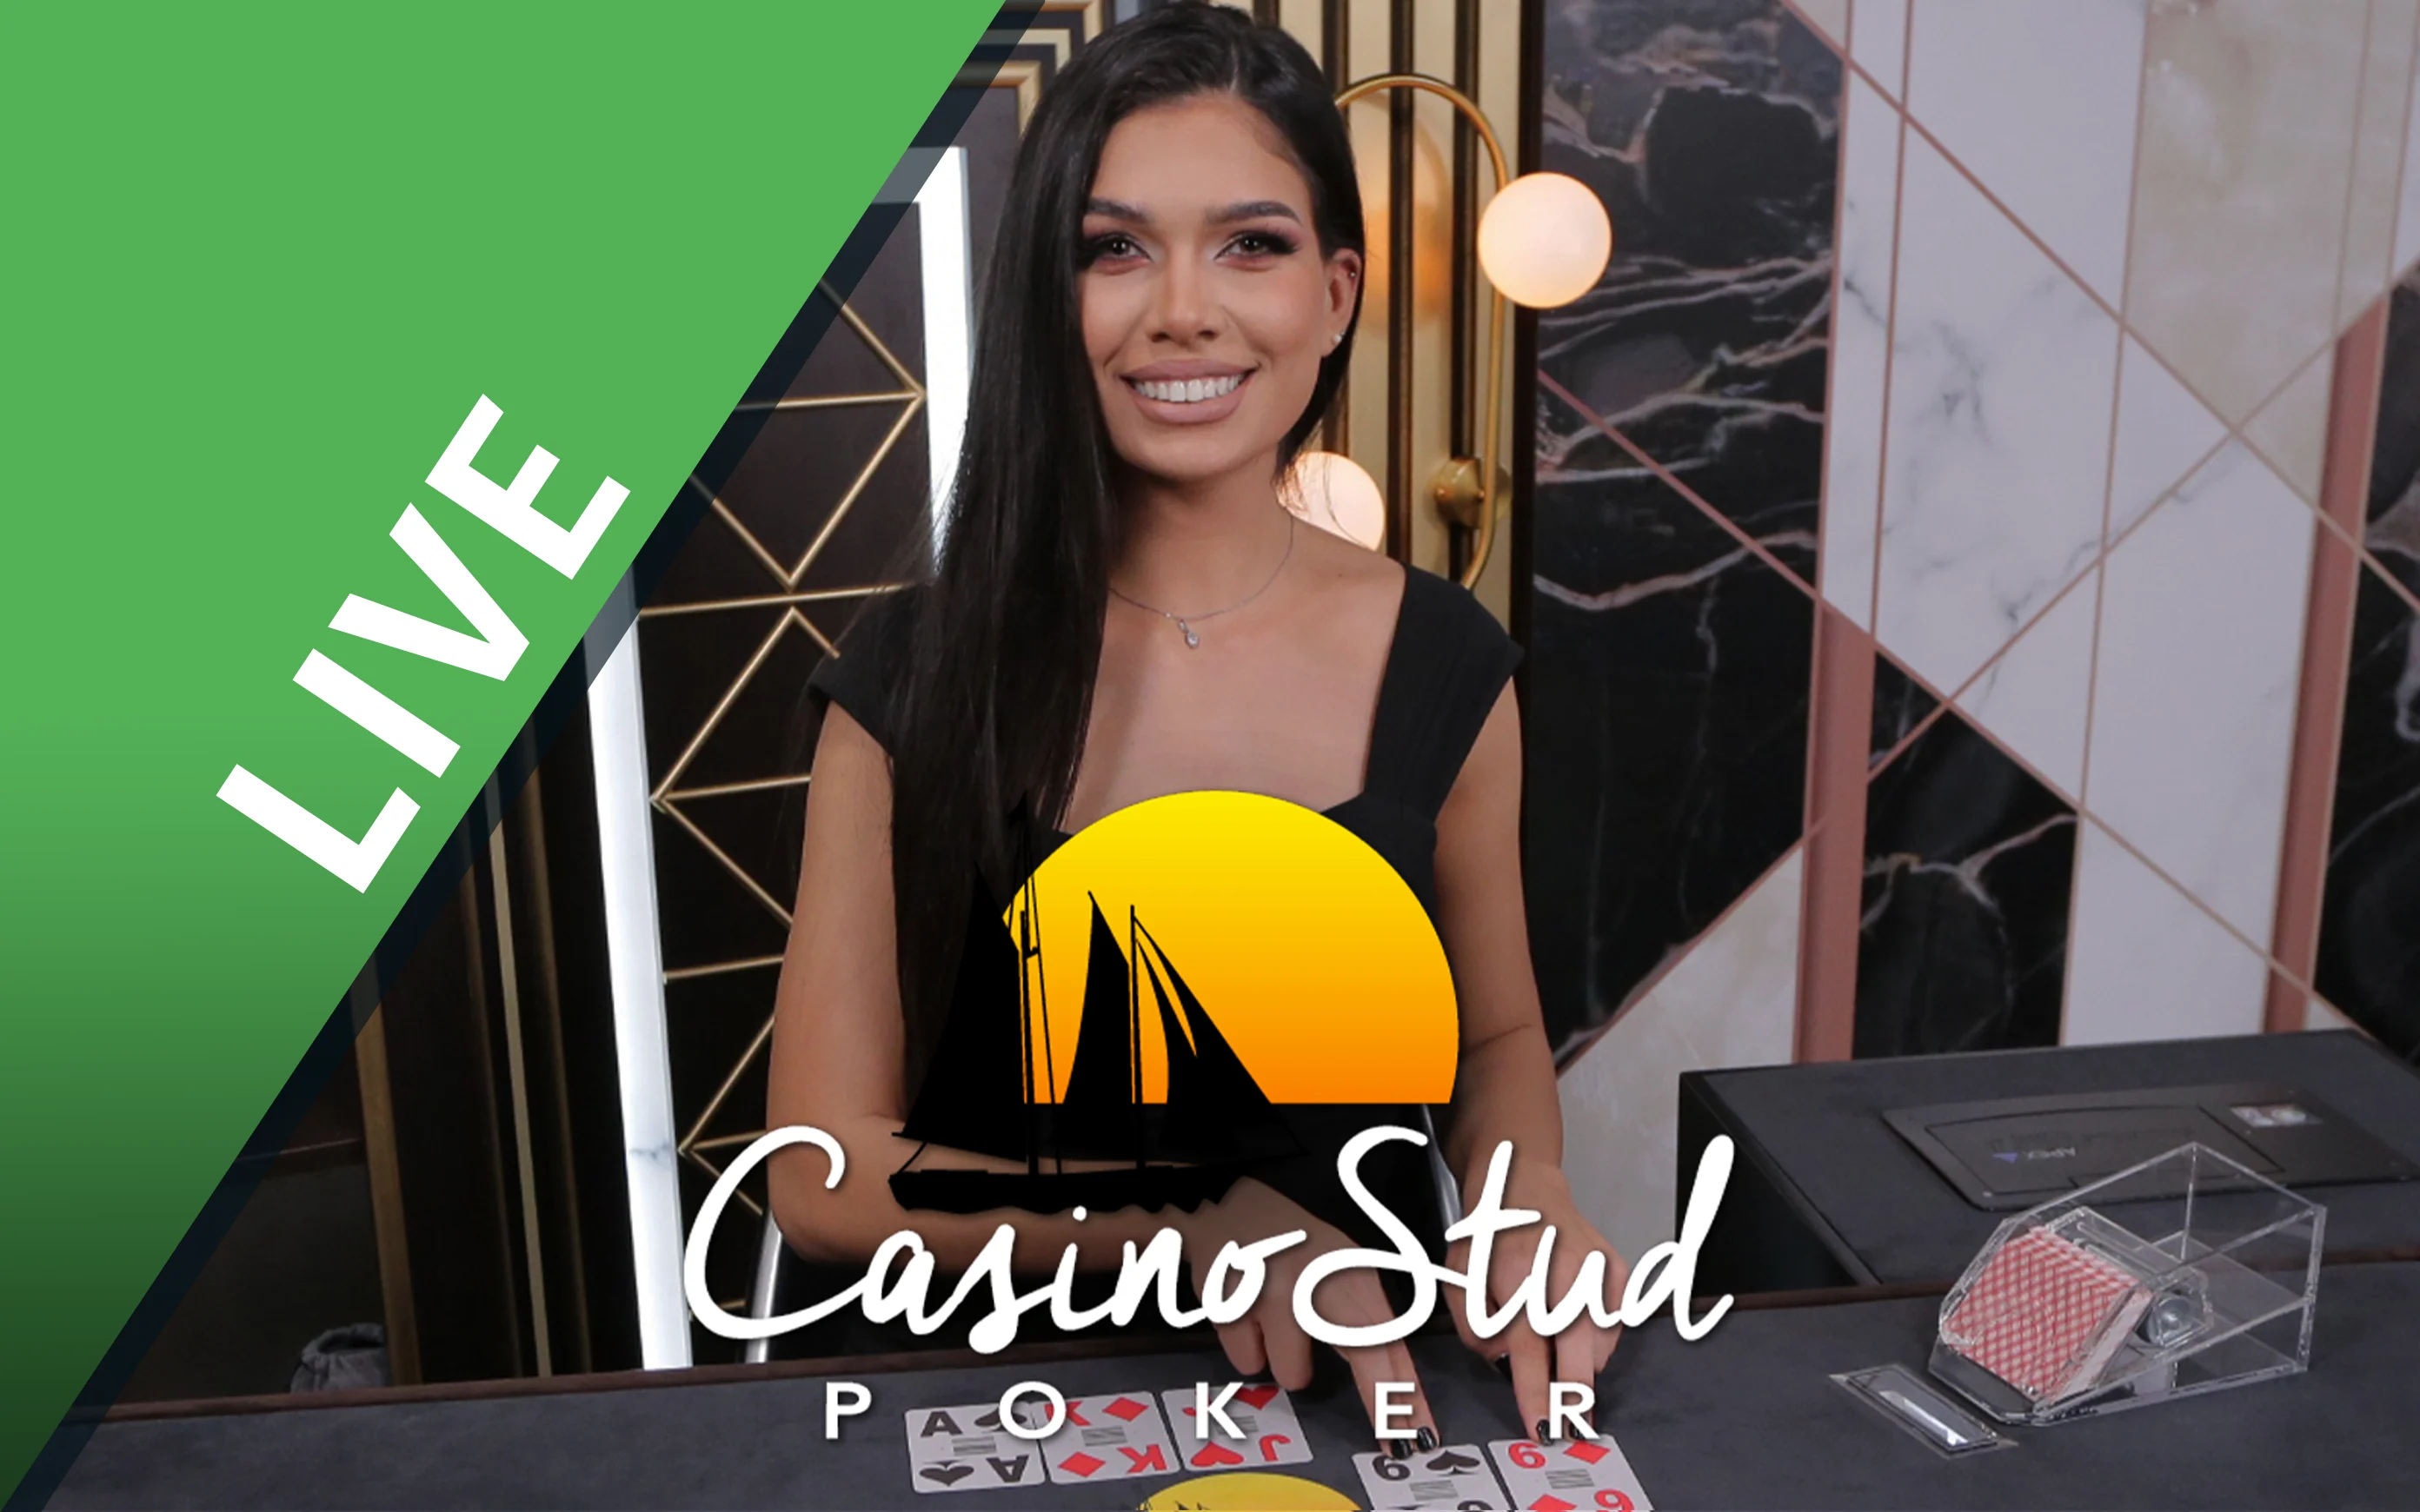 Play Casino Stud Poker on Starcasino.be online casino